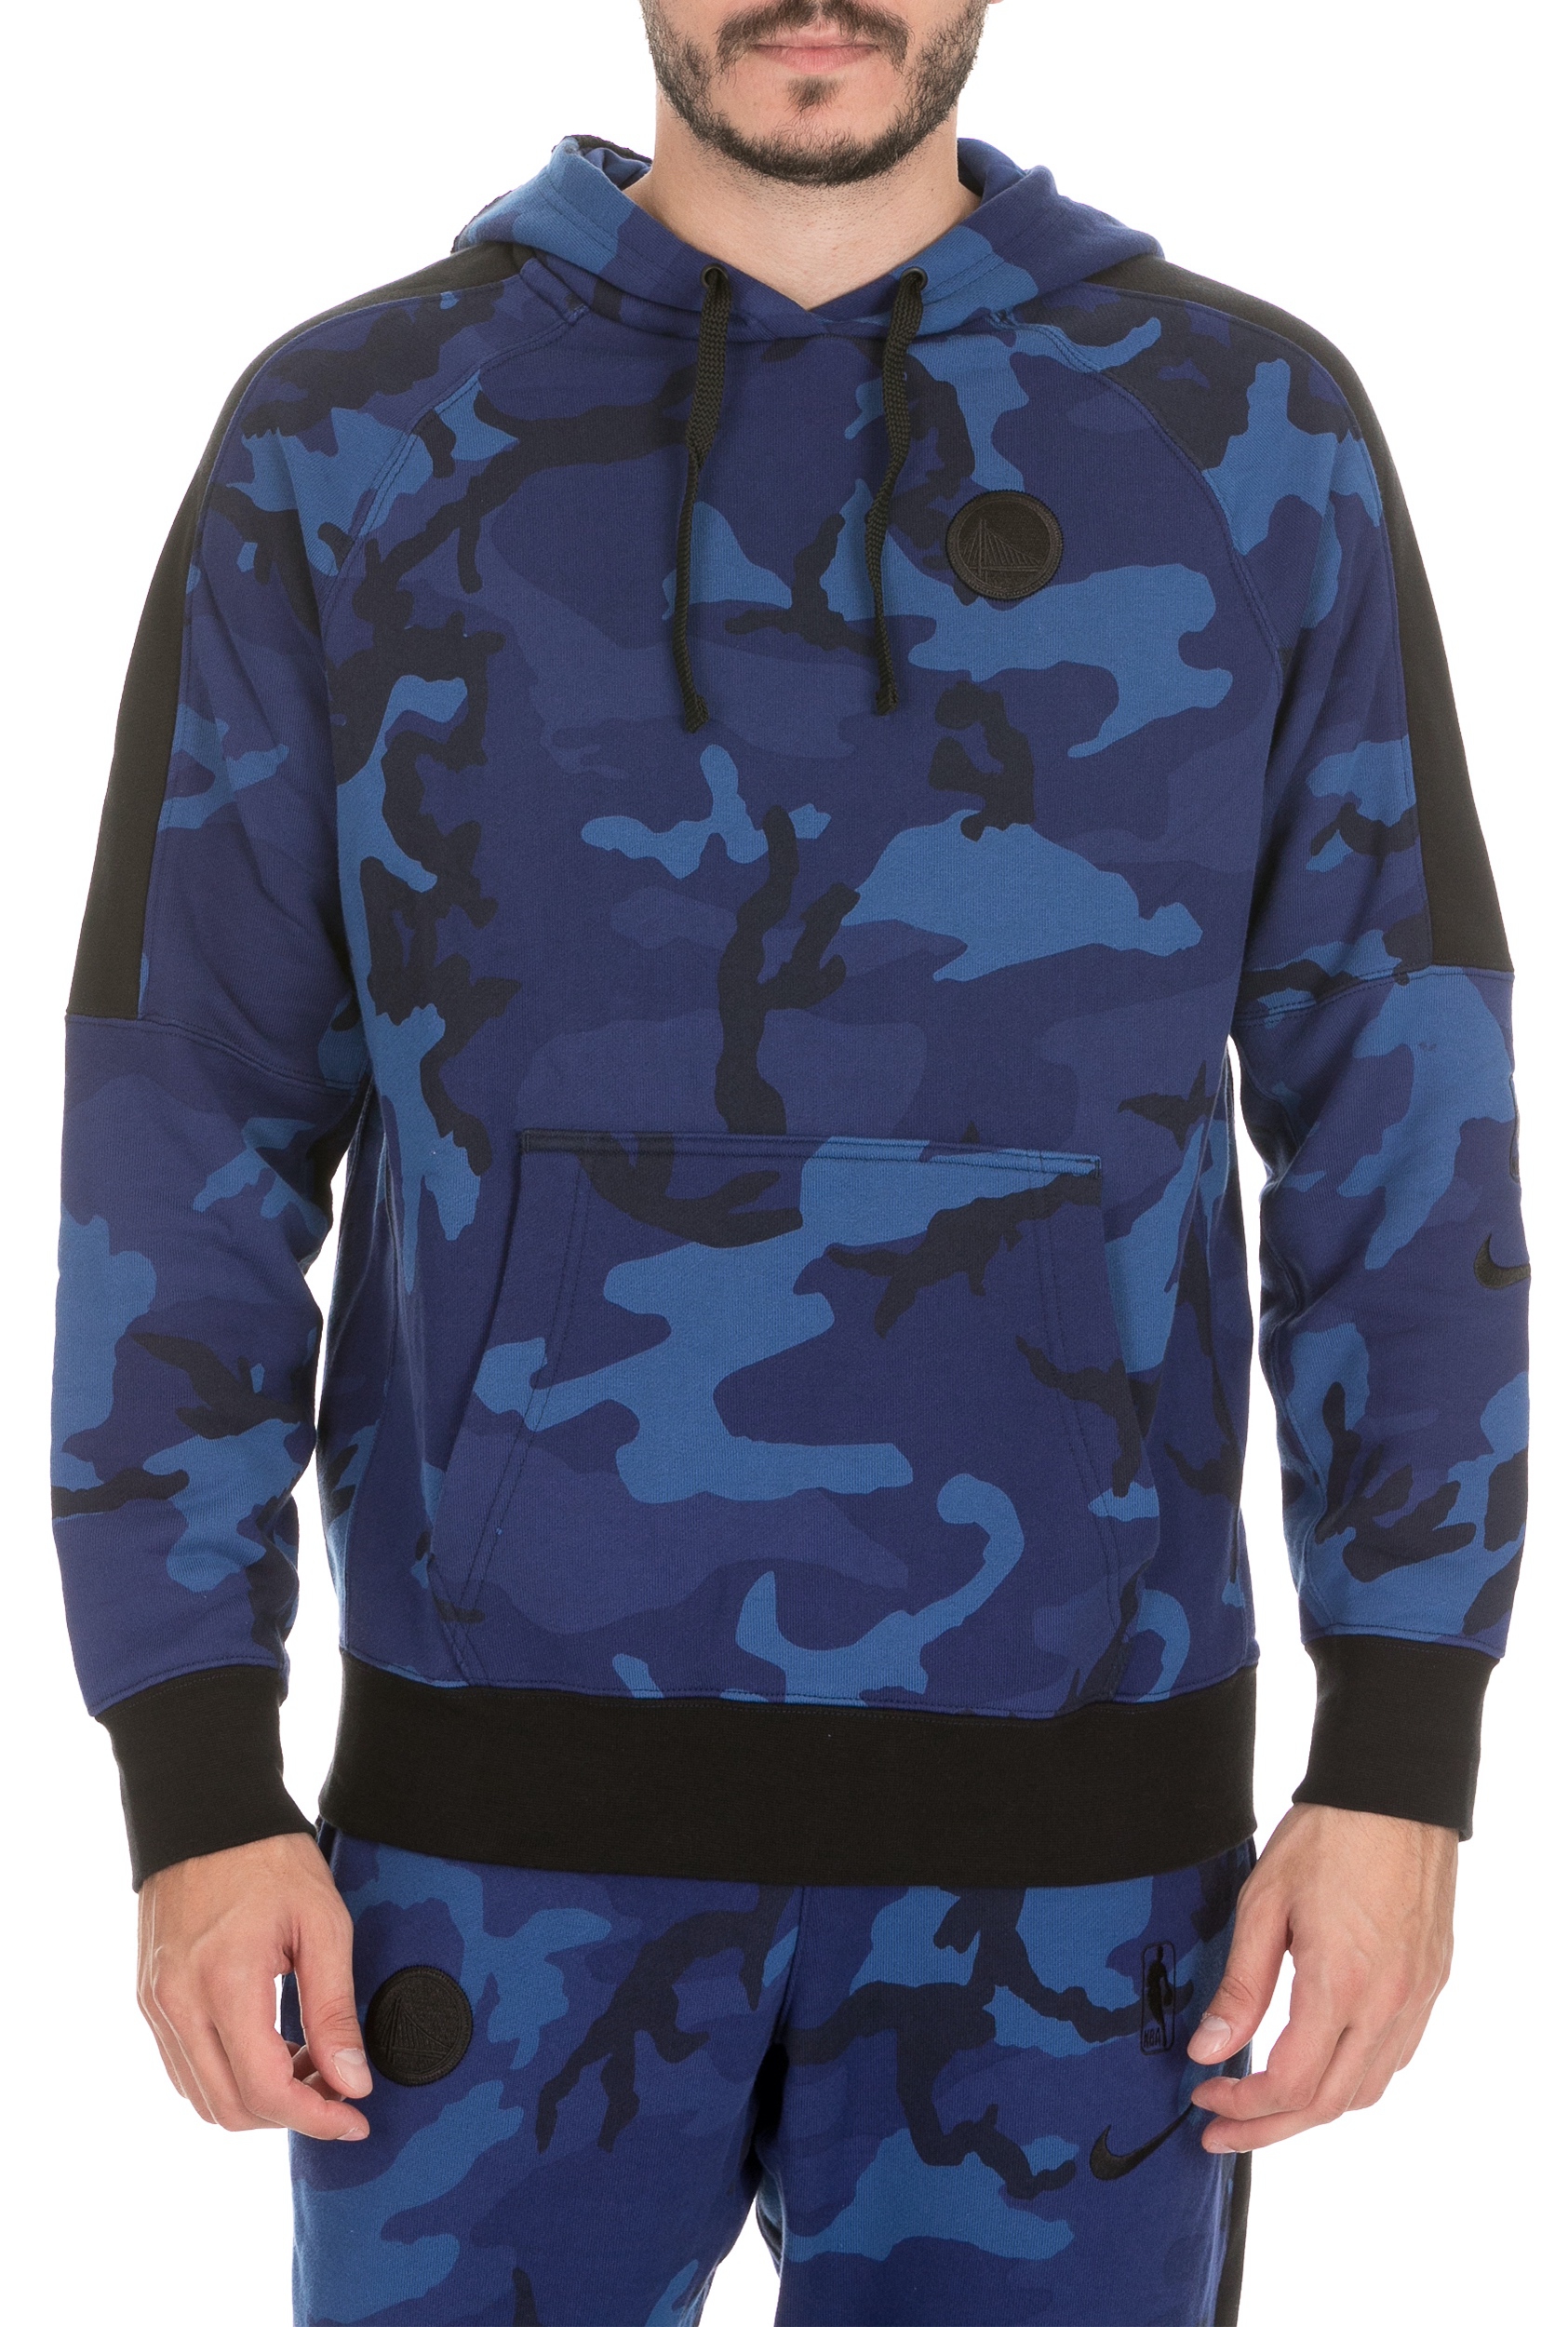 Ανδρικά/Ρούχα/Φούτερ/Μπλούζες NIKE - Aνδρική μπλούζα φούτερ NIKE Golden State Warriors μπλε